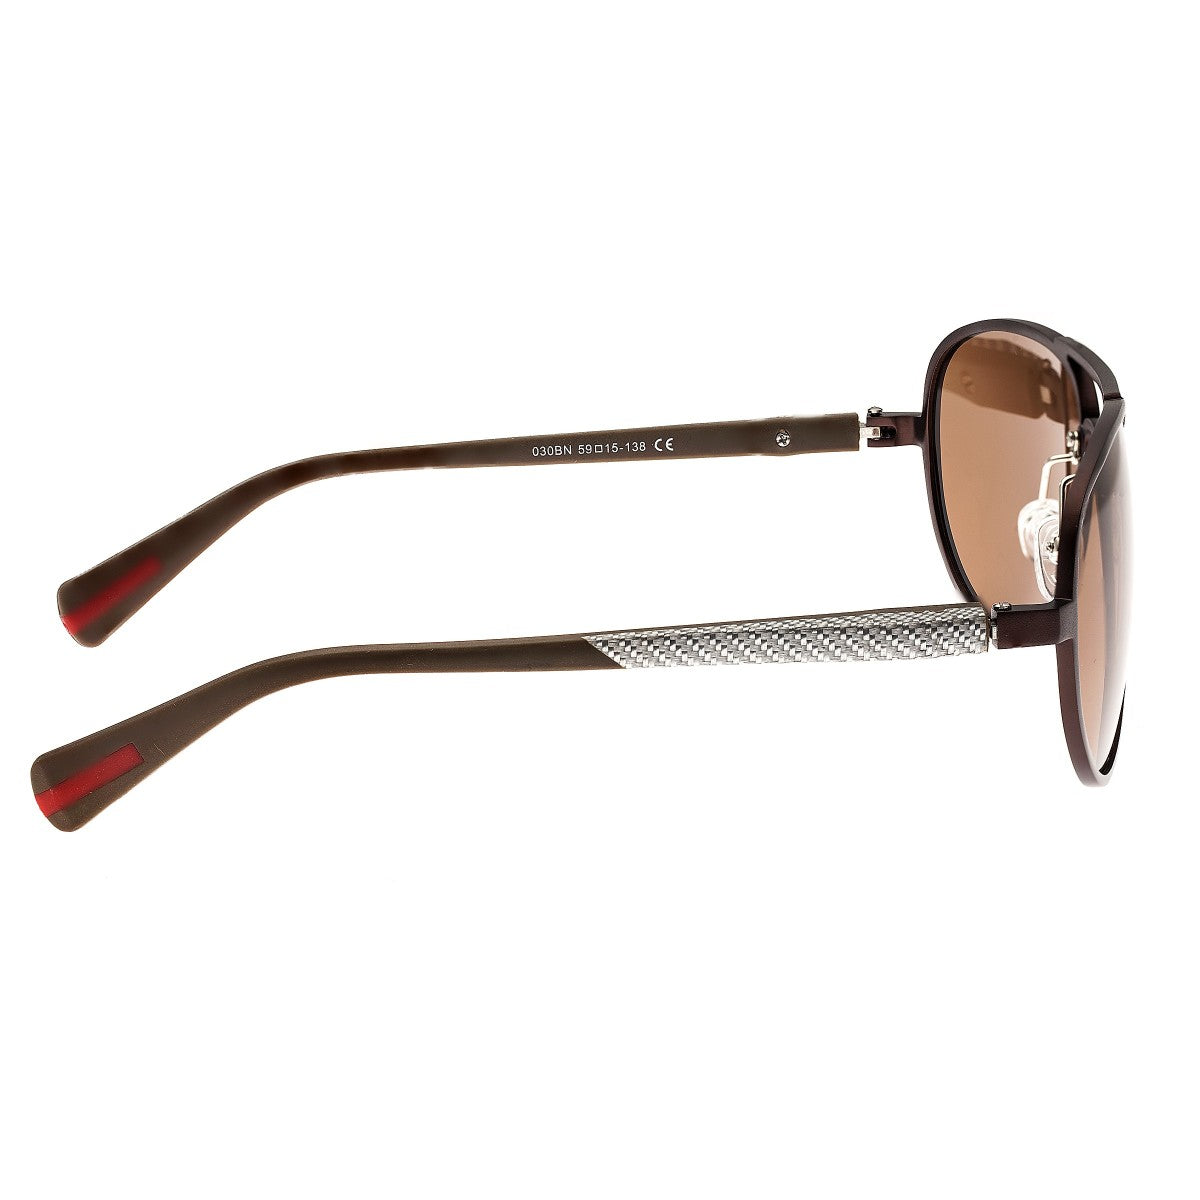 Breed Dorado Titanium Polarized Sunglasses - Brown/Brown - BSG030BN